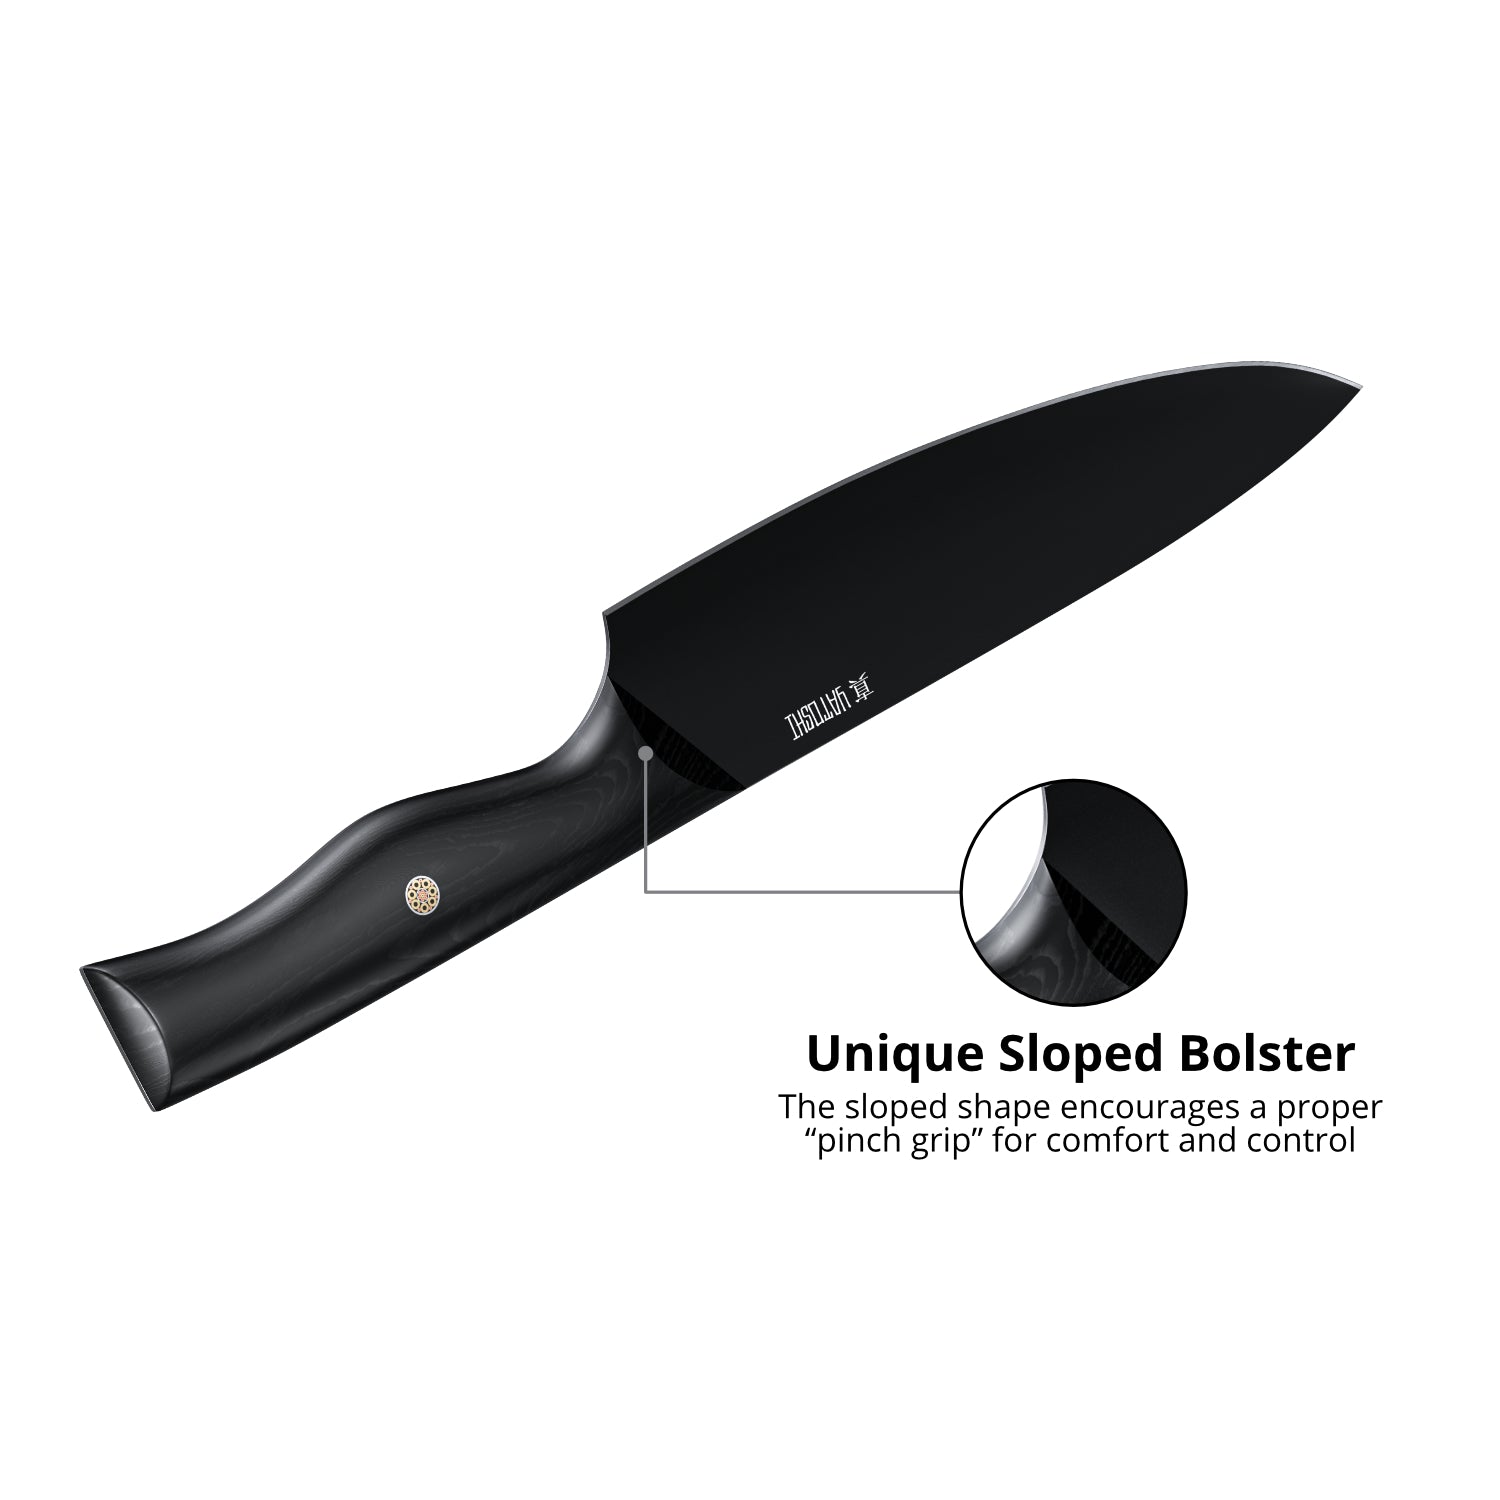 Yatoshi 7 Piece Knife Set - Onyx Black Titanium Nitride Coating- Ultra  Sharp High Carbon Stainless Steel - Black Pakkawood Ergonomic Handle -  Yahoo Shopping